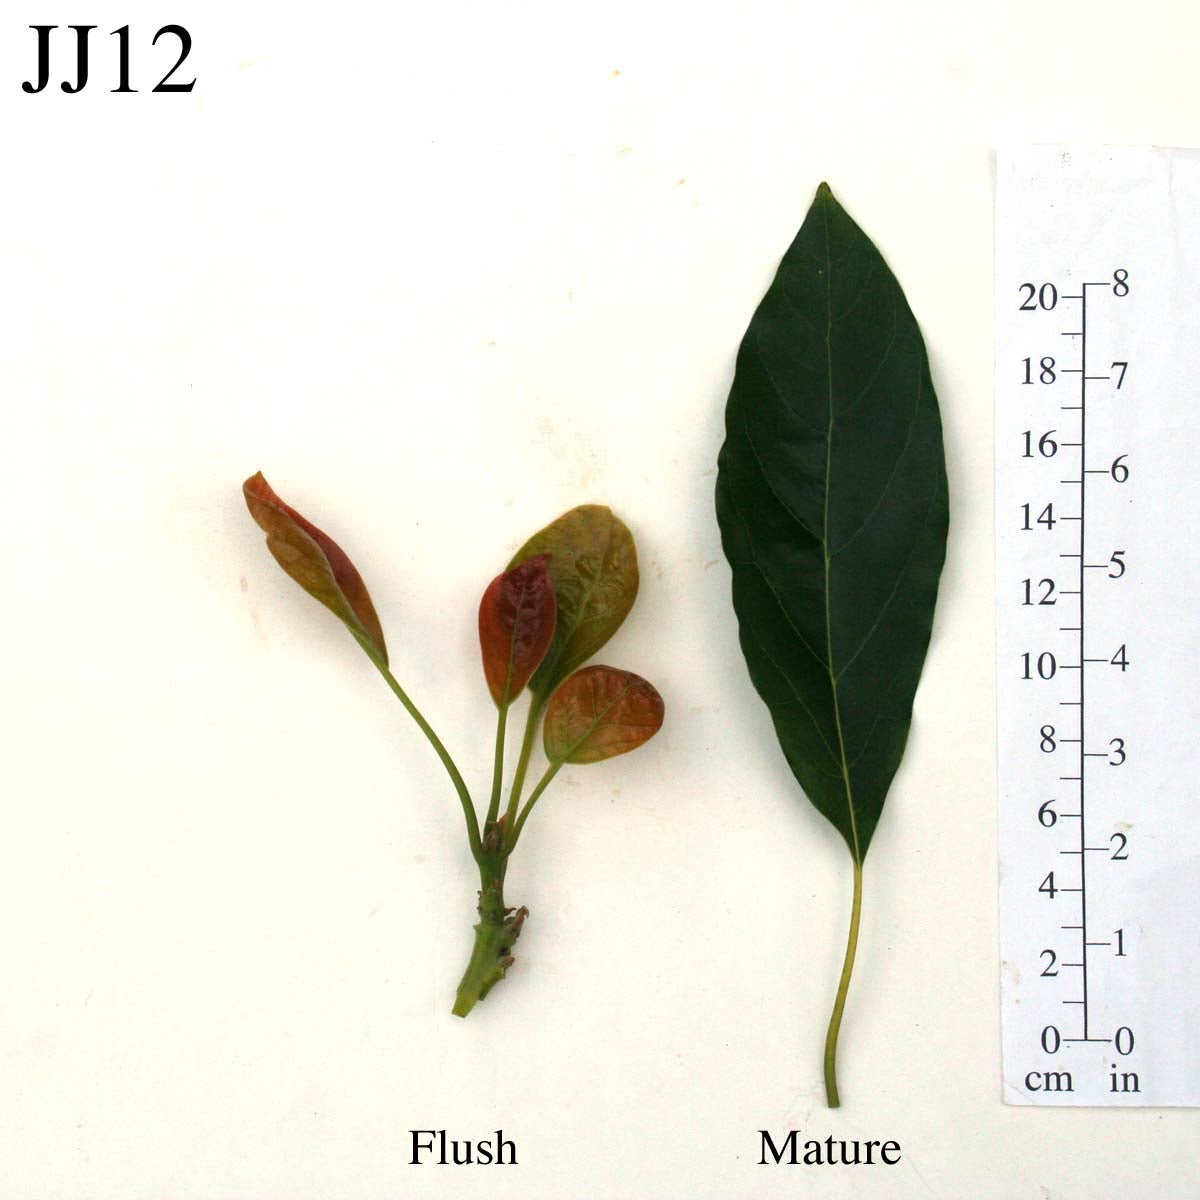 JJ12 Leaves